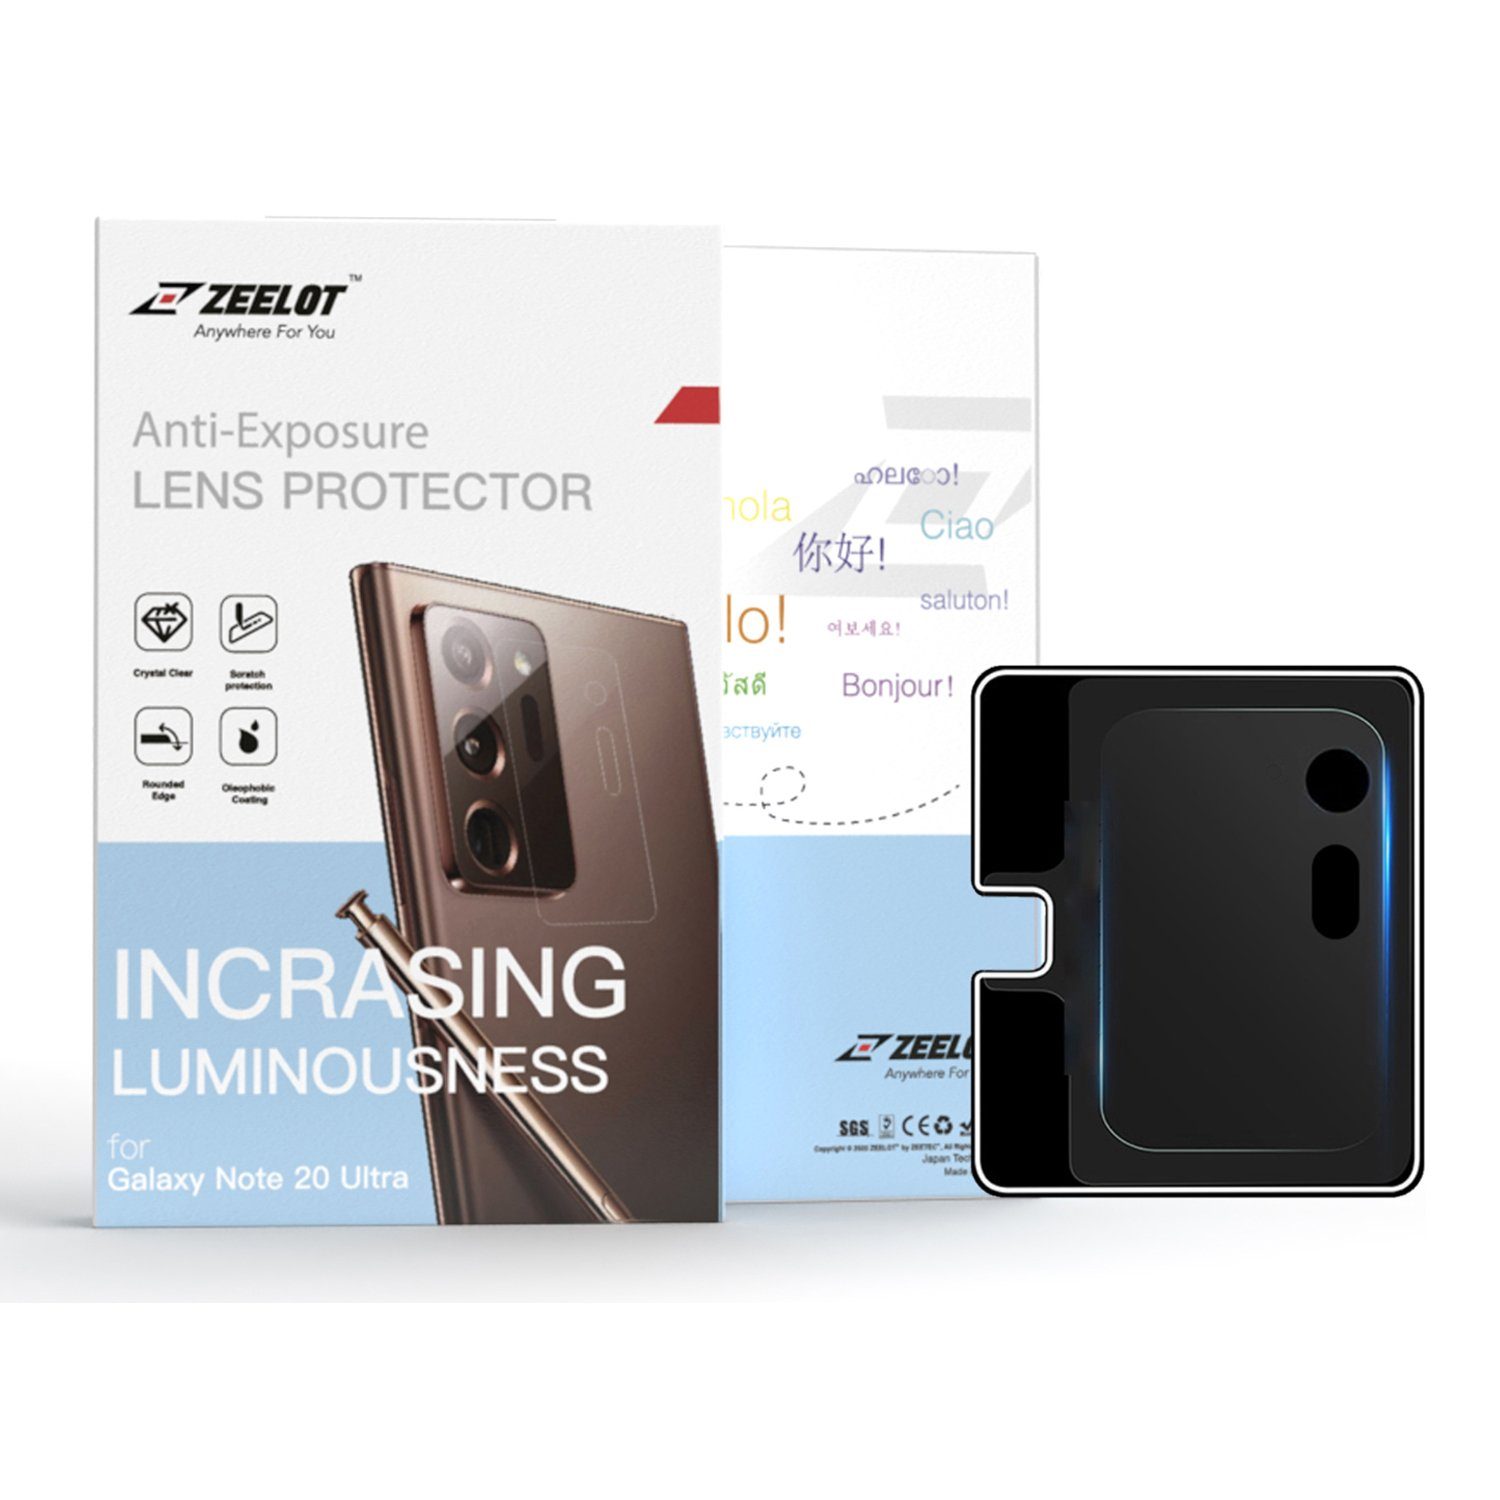 ZEELOT Samsung Galaxy Note 20 Ultra Lens Protector, Black Default ZEELOT 